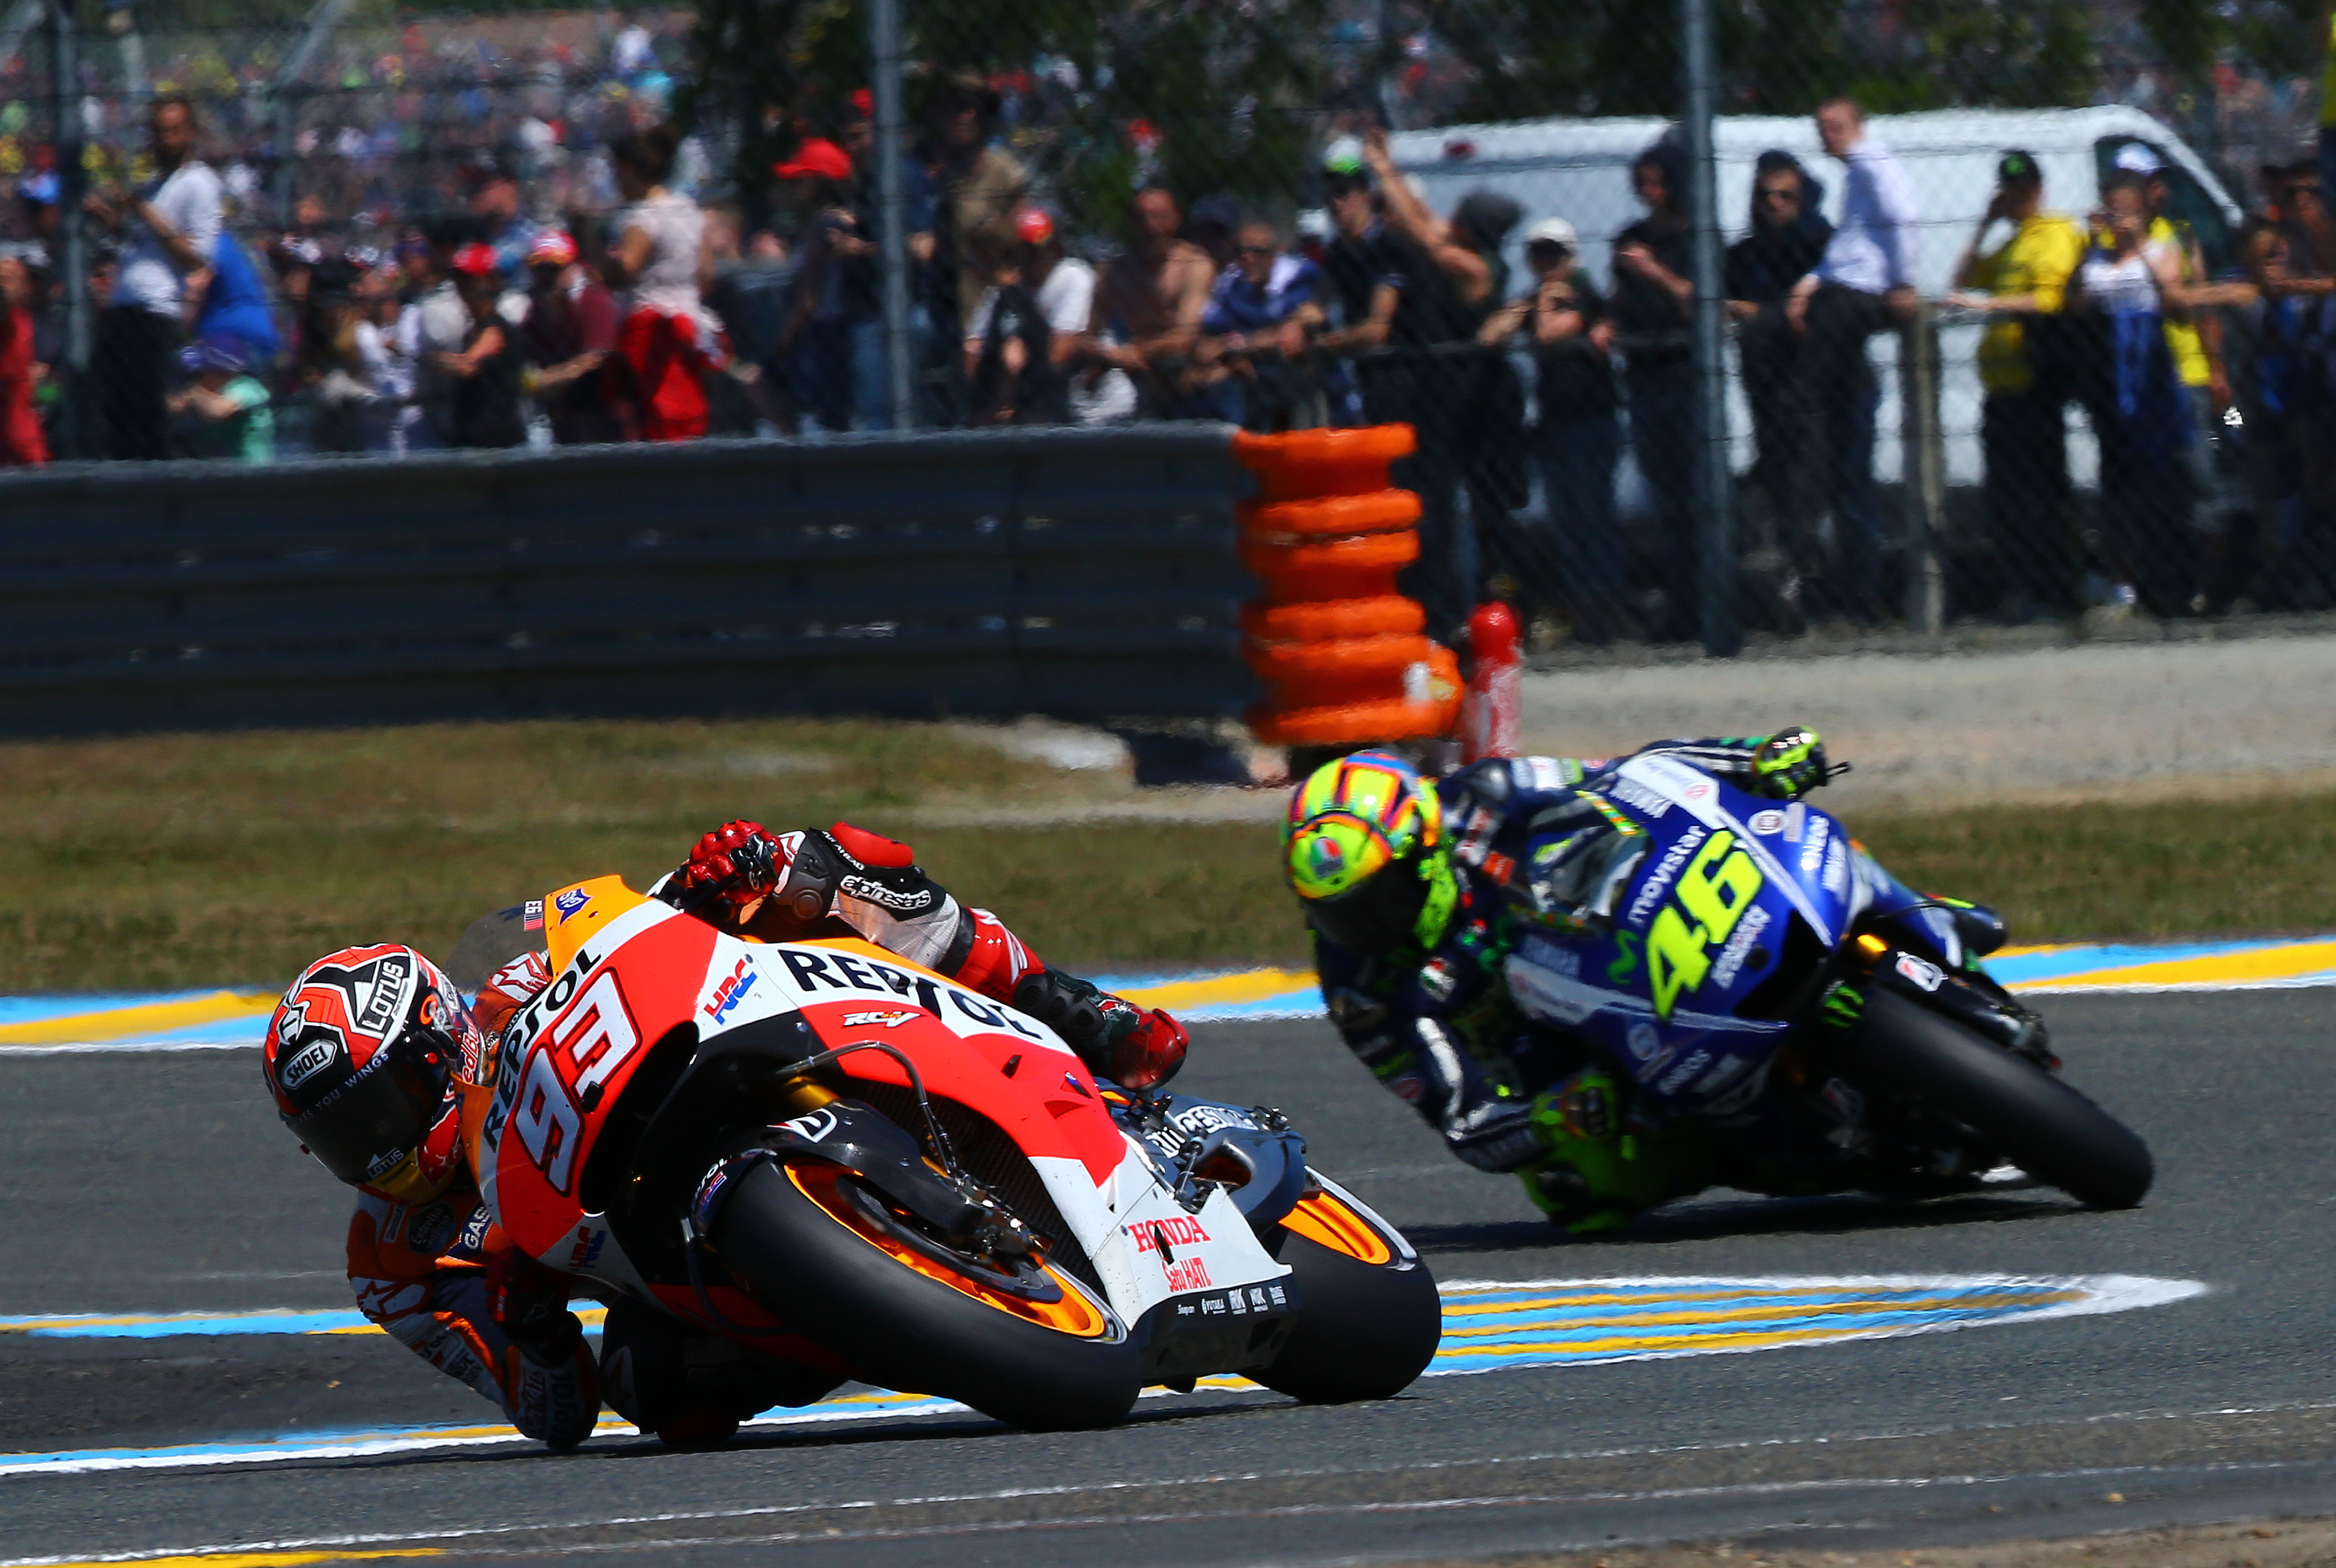 MotoGP 2014: Le Mans race results